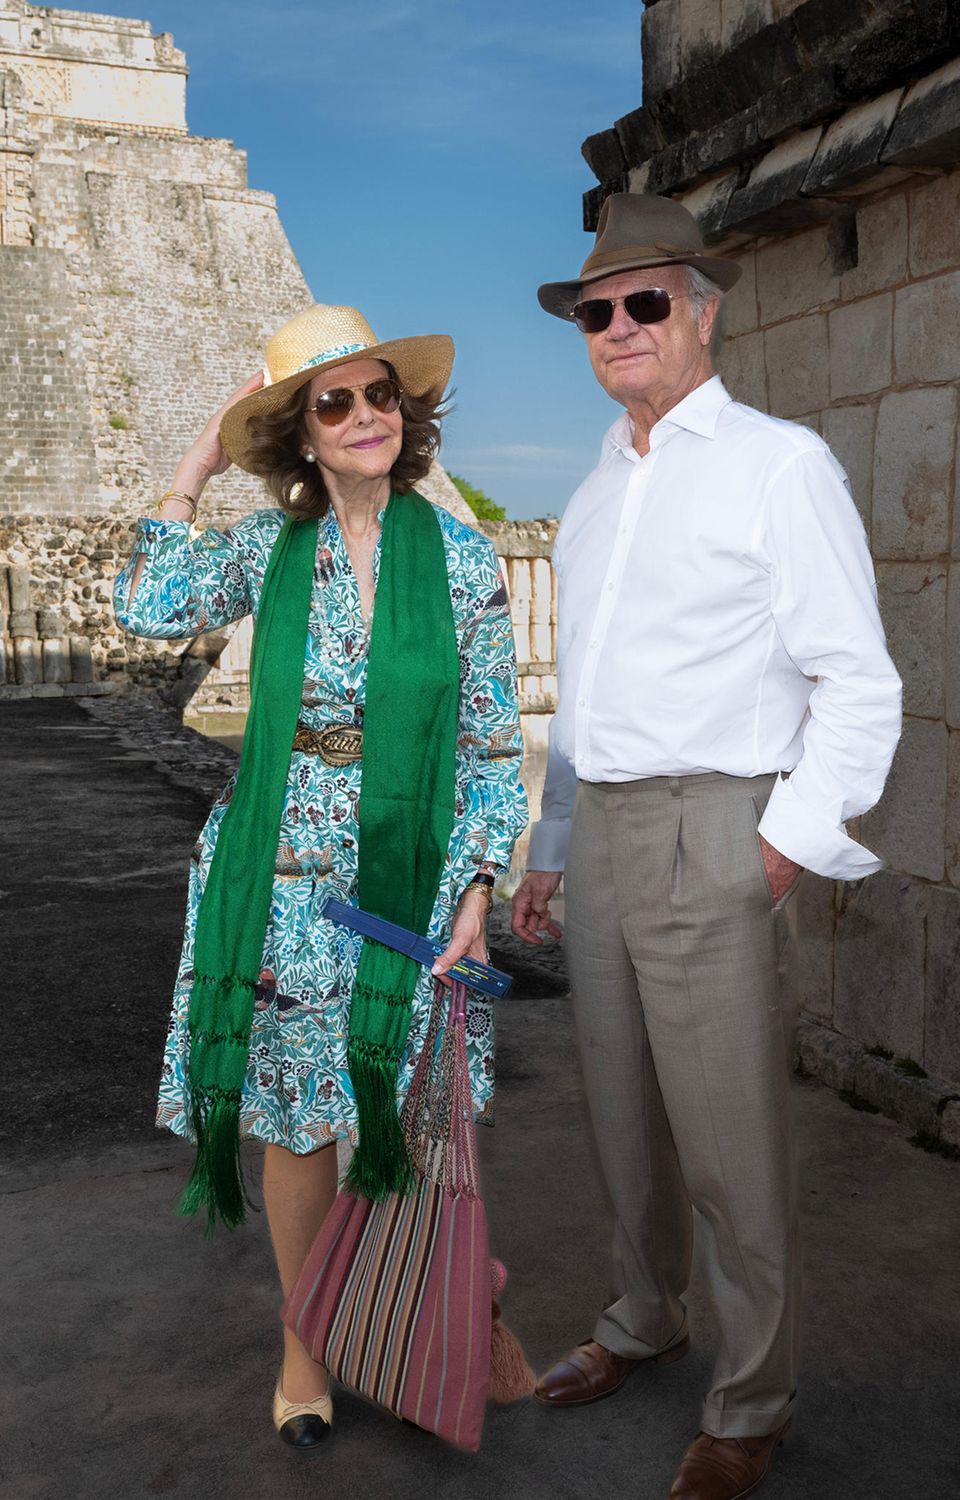 Bei diesem Bild kann man doch nur Lust auf Urlaub bekommen. Carl Gustaf und Silvia von Schweden strahlen in ihren Sommerlooks am dritten Tag ihres Staatsbesuchs in Mexiko. Ausgestattet mit Hüten, Fächern und Sonnenbrillen begeben sie sich auf eine Sightseeing-Tour durch Mexiko-Stadt. Silvia trägt dabei ein gemustertes Sommerkleid in Blau- und Brauntönen. Dazu kombiniert sie ein grünes Tuch, trendige Ballerinas und einen goldschimmernden Gürtel. Ihre Accessoires sind ebenfalls Gold. Carl Gustaf setzt bei dem Ausflug auf ein legeres, weißes Hemd und eine graue Hose.